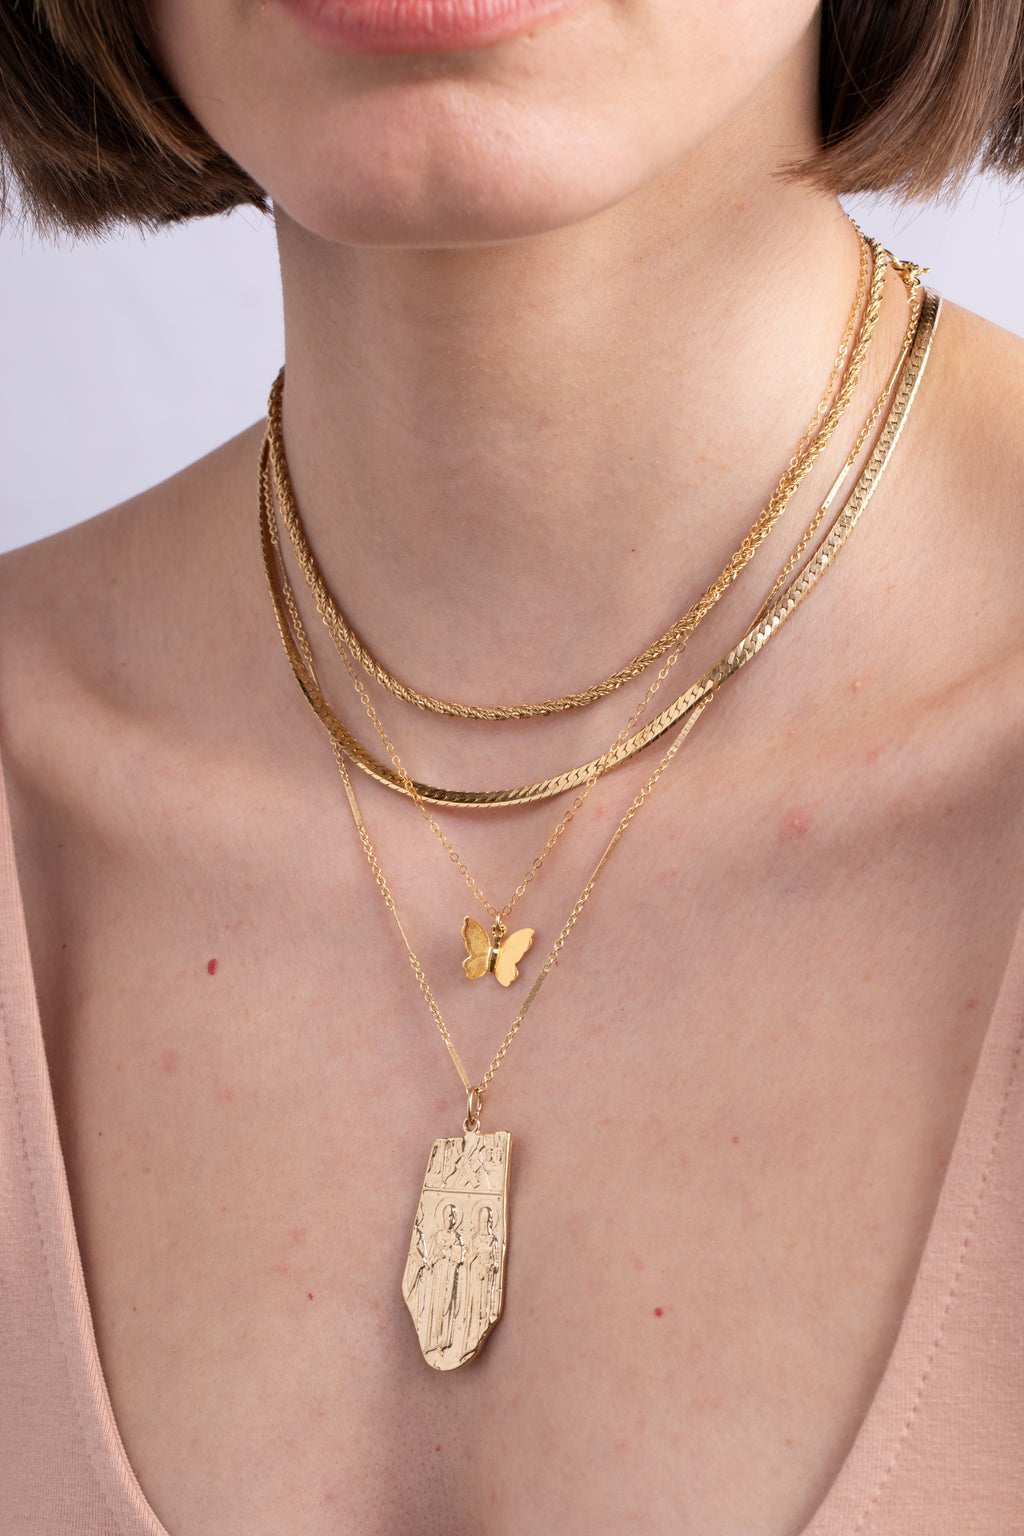 Flutter Necklace in Gold